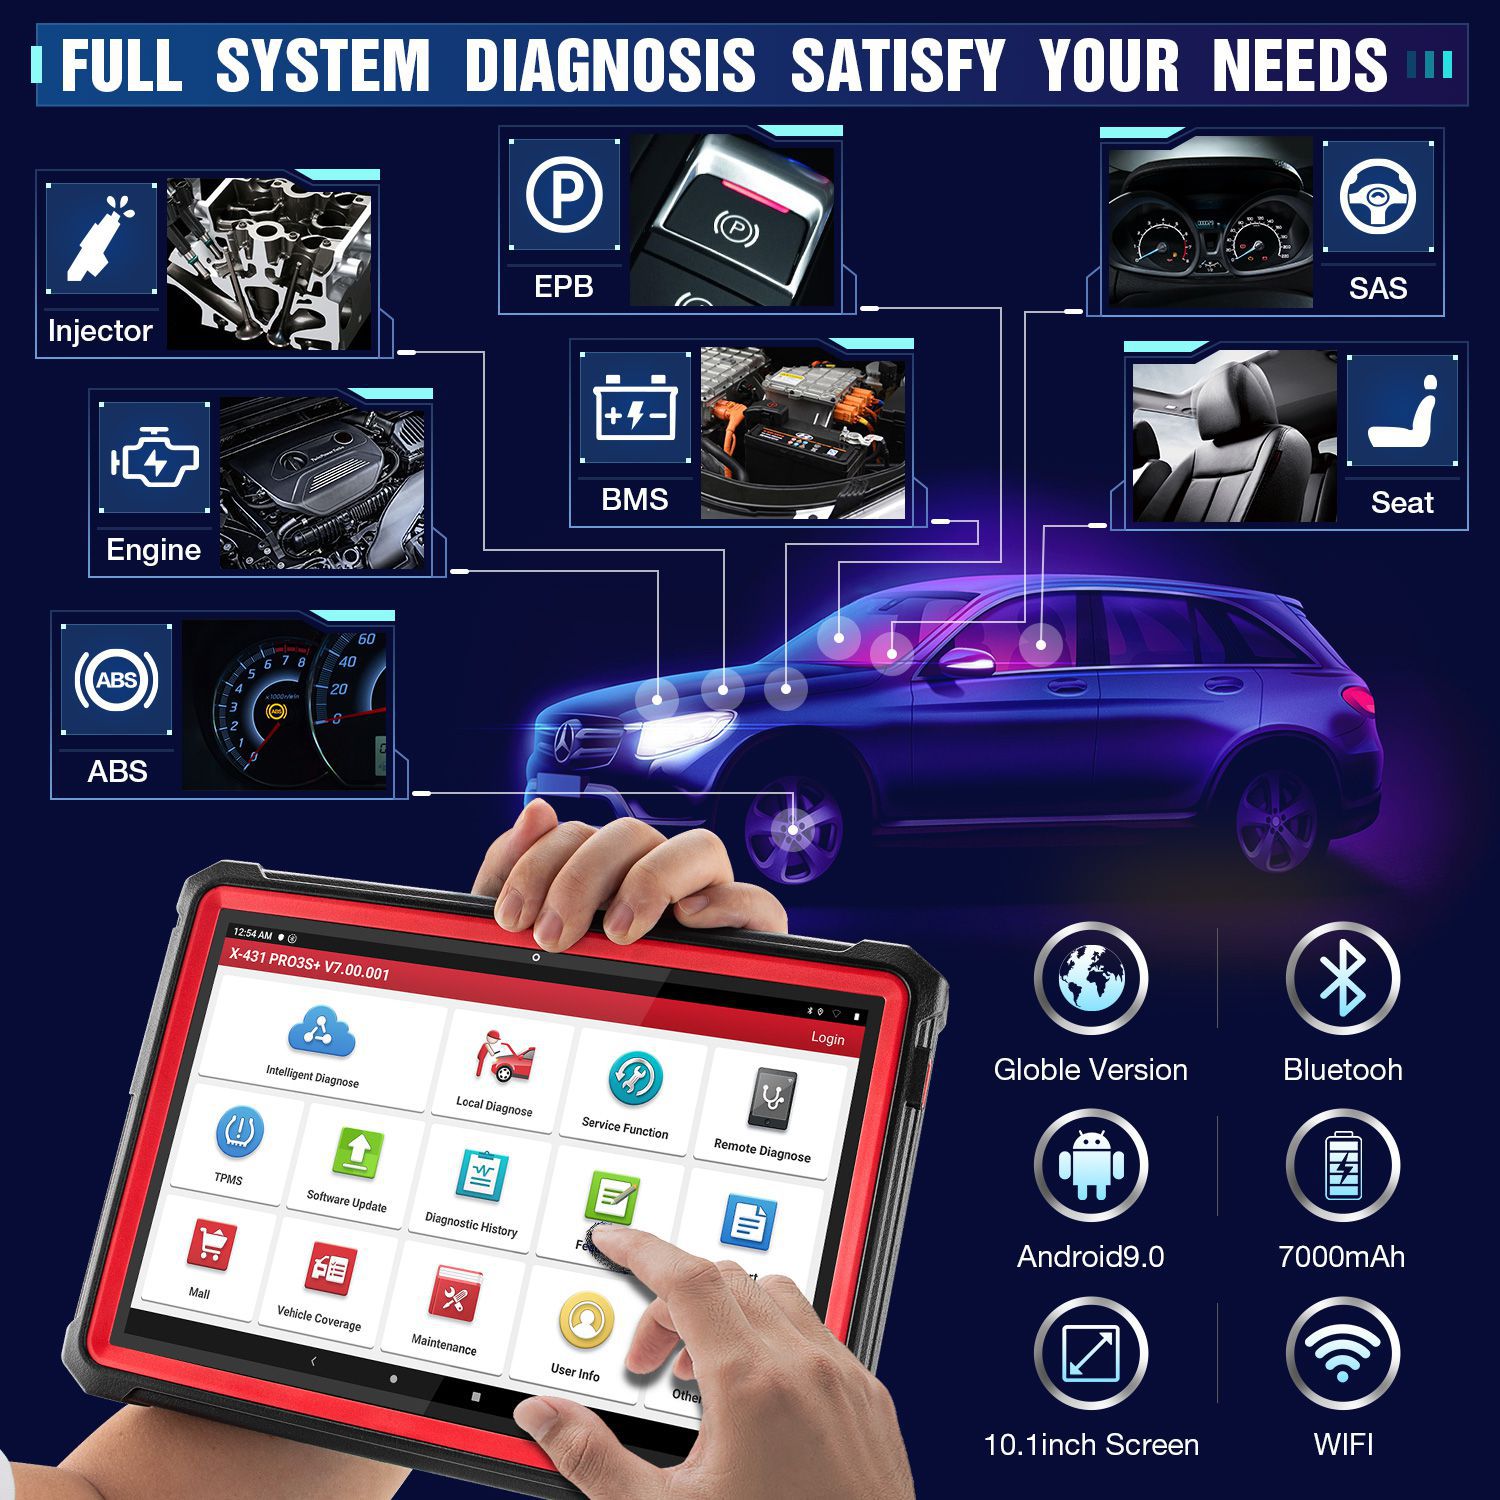 LAUCH X431 Pro3s Plus OBD2 Diagnostic Scanner Automotive Auto Diagnostic Tool Car Code Reader X431 PRO ECU Coding